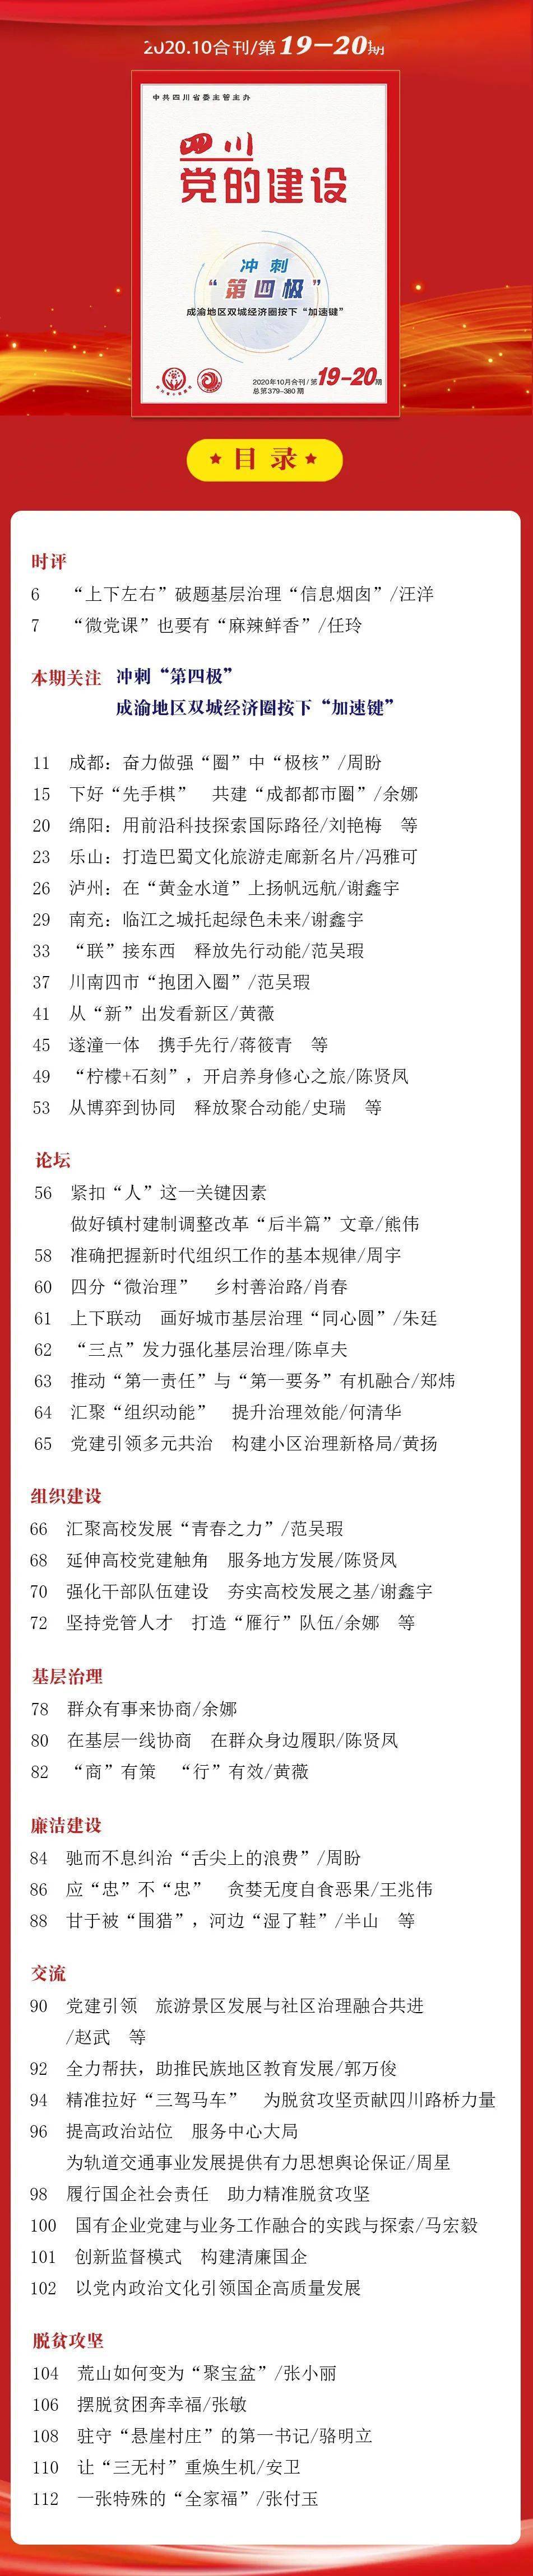 
【新刊预览】《四川党的建设》杂志2020年第19、20期目录公布_米乐体育官方APP(图1)